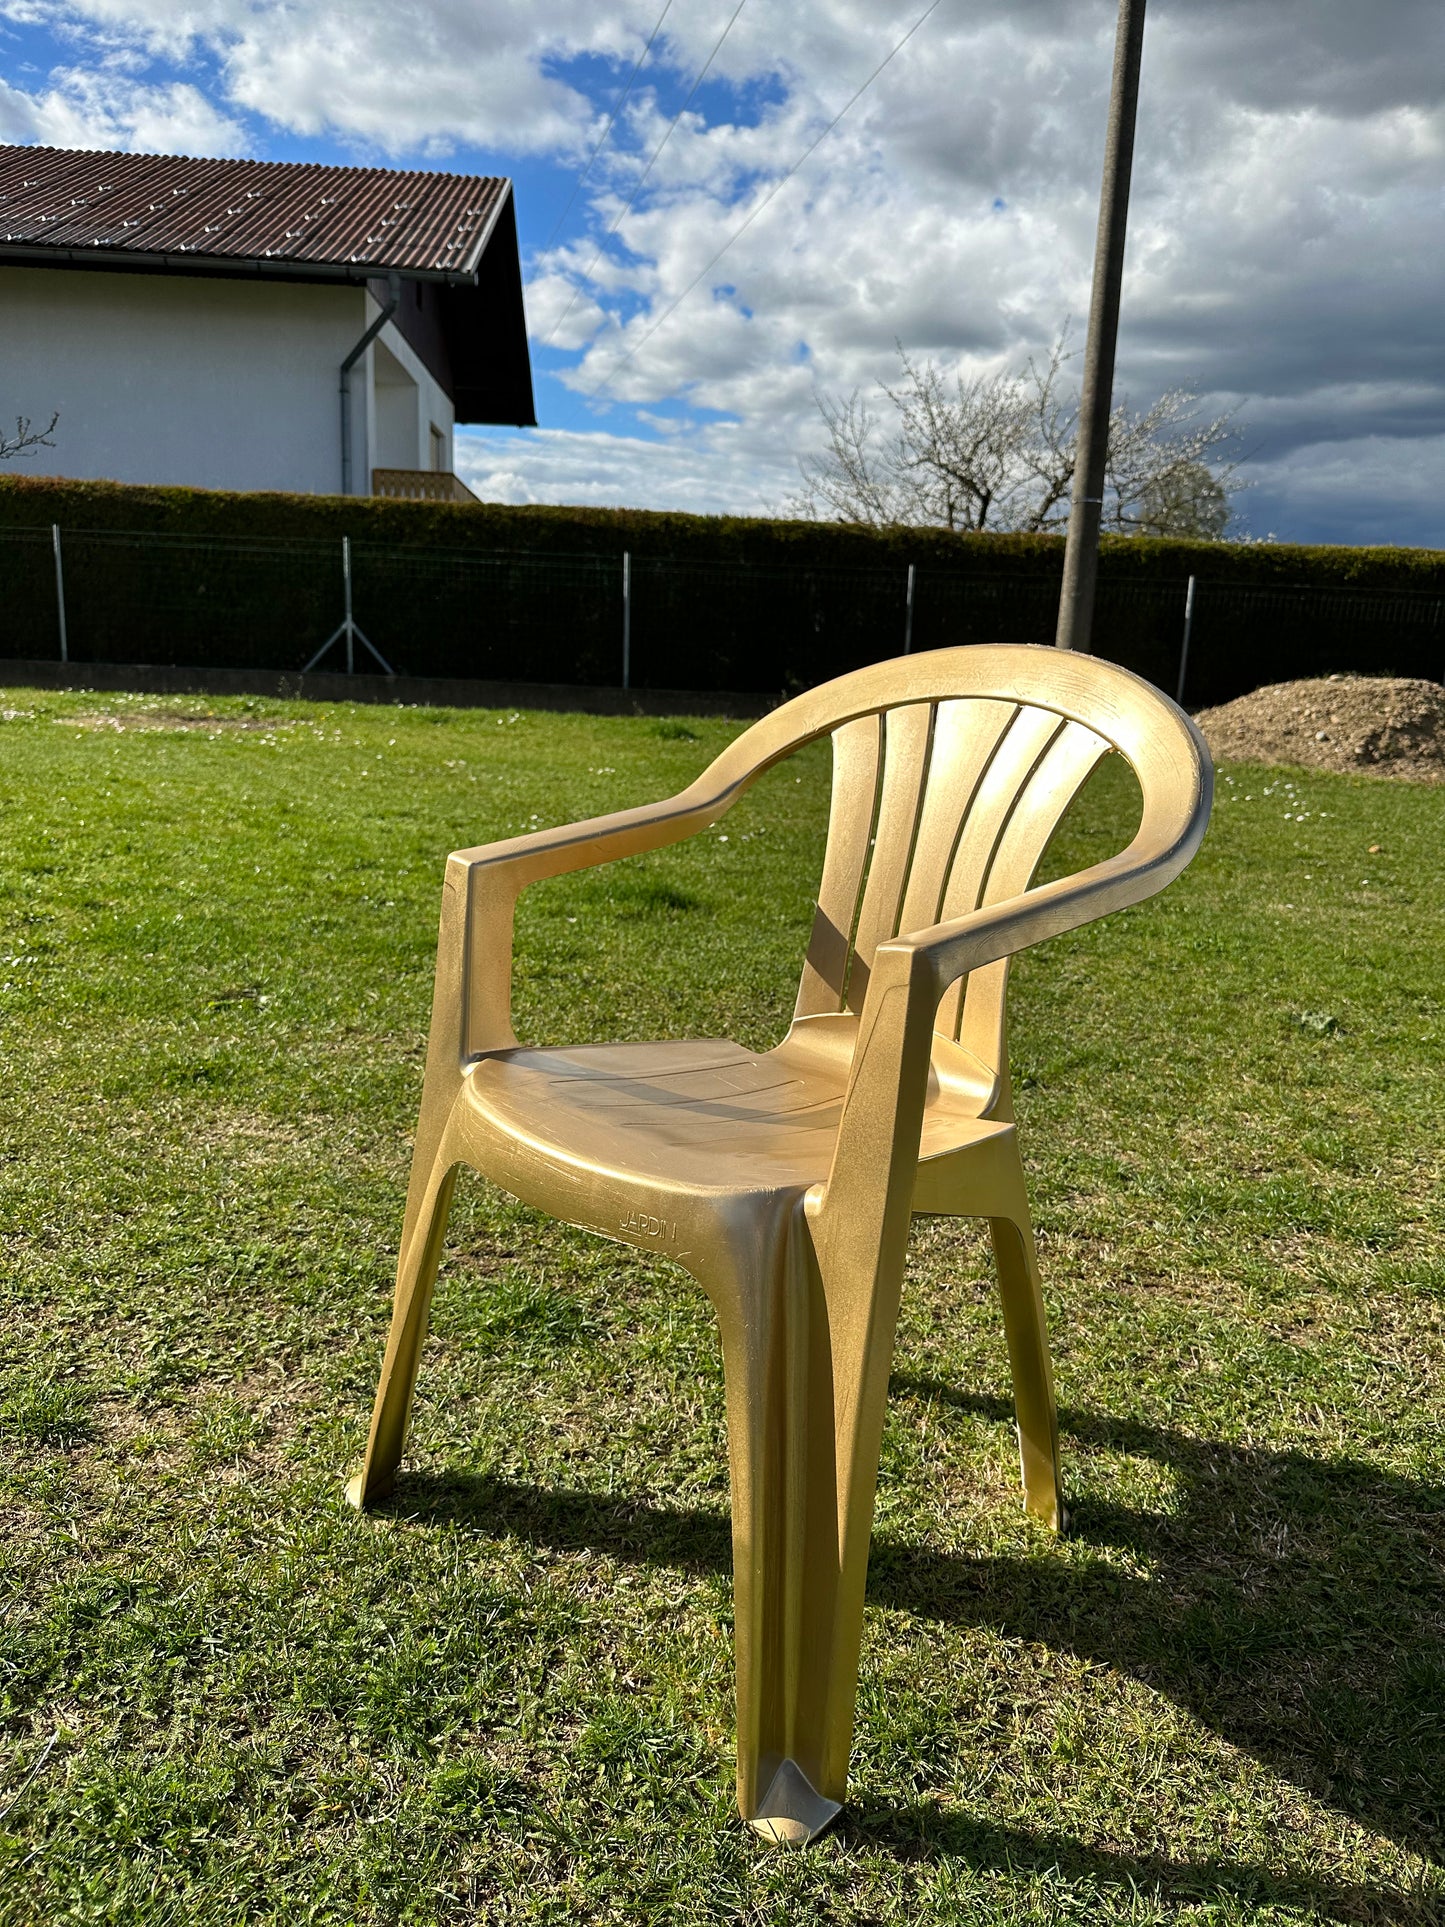 Balkan luxurious chair